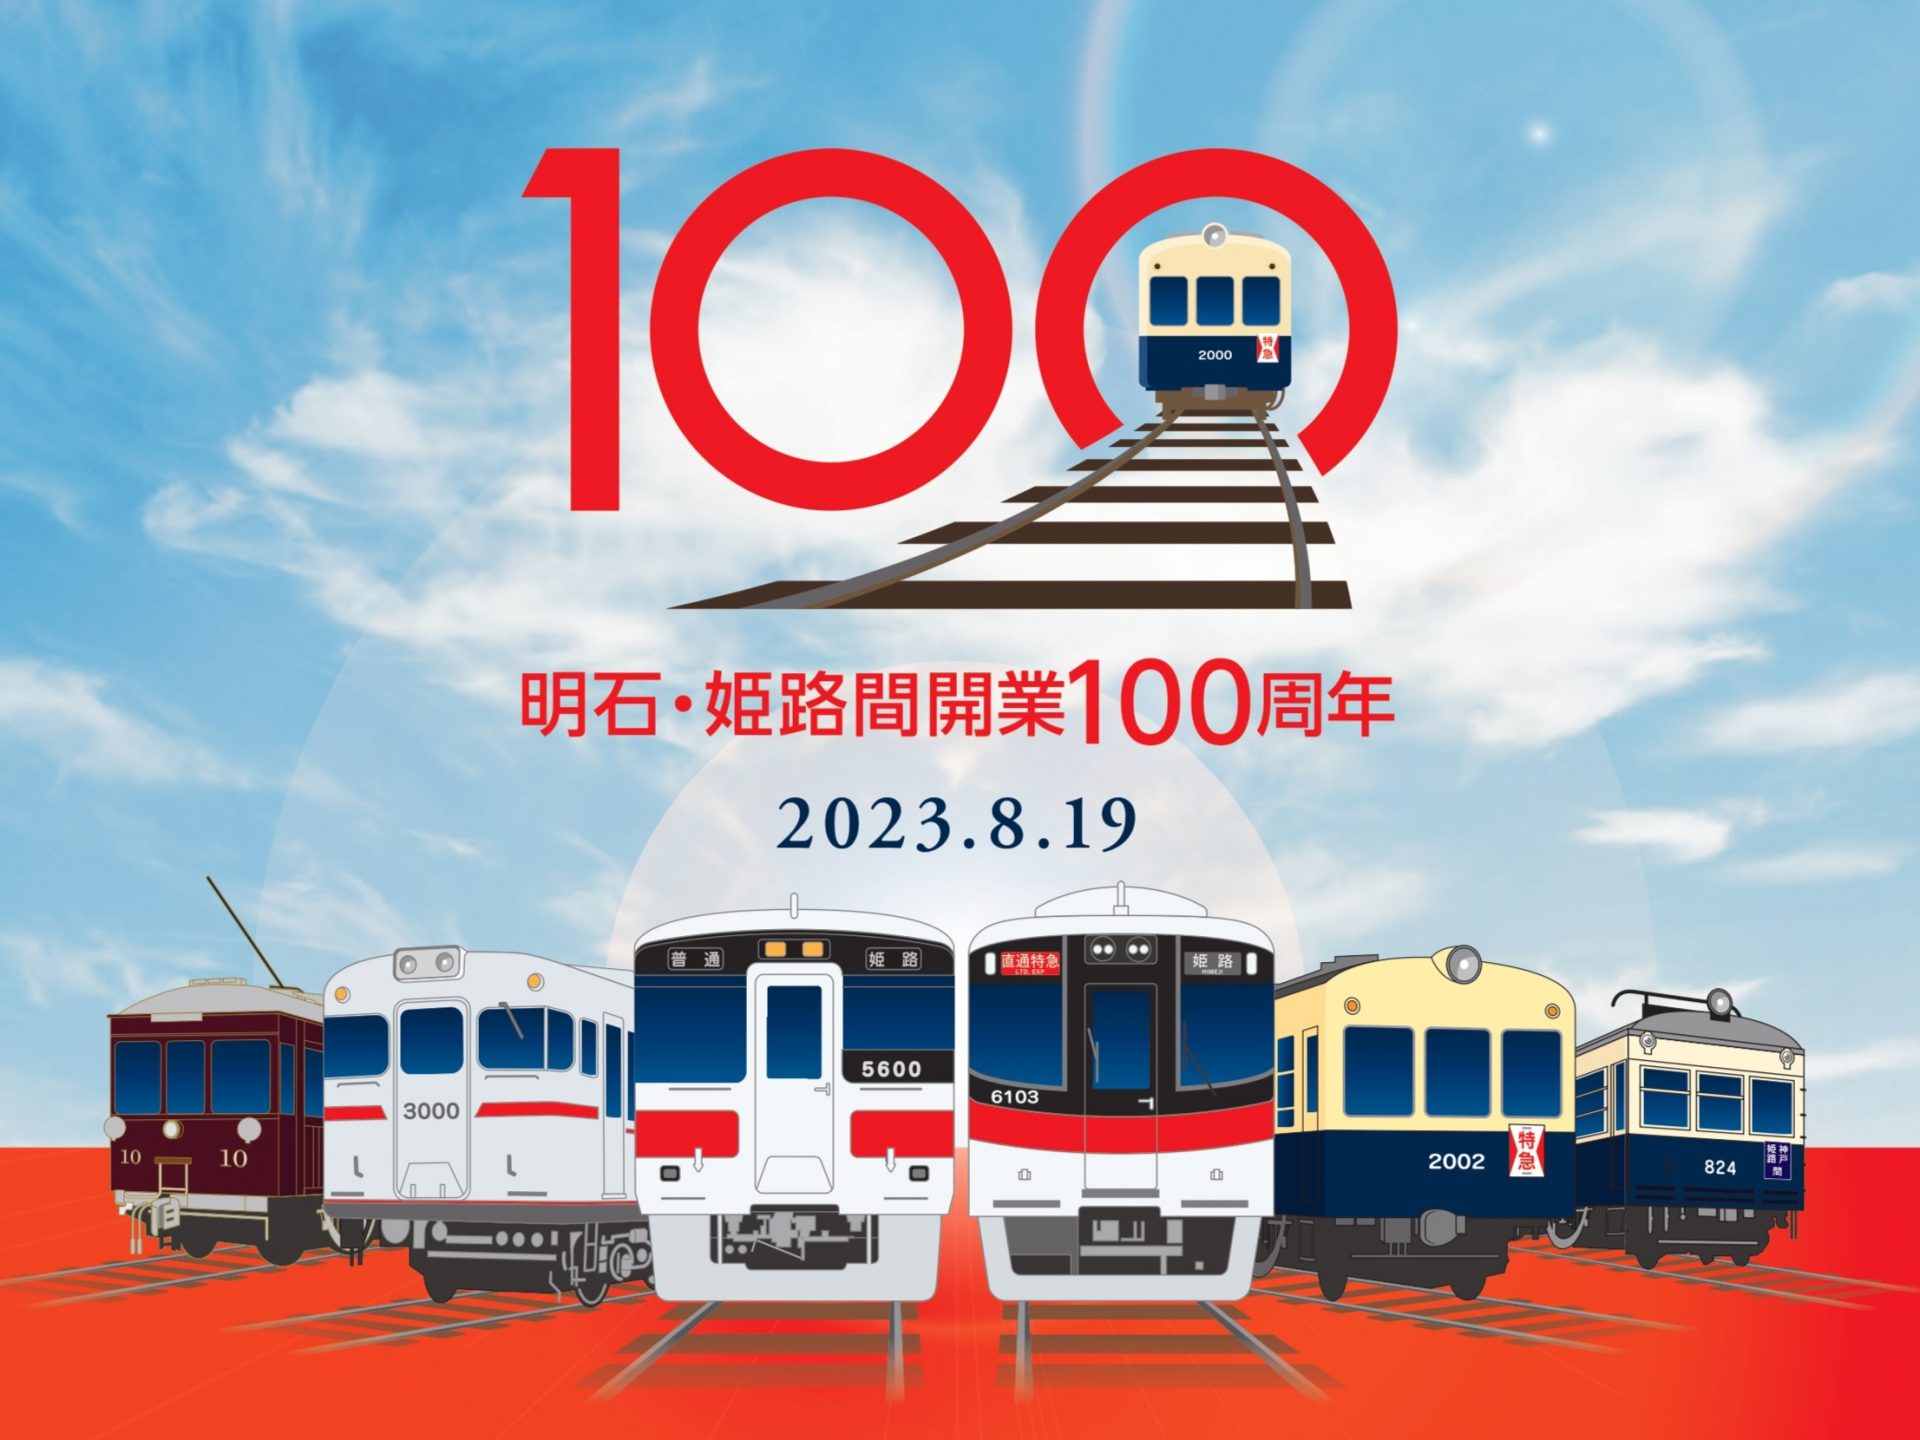 山陽電車 明石〜姫路間開業100年 記念ヘッドマーク、お得きっぷも 